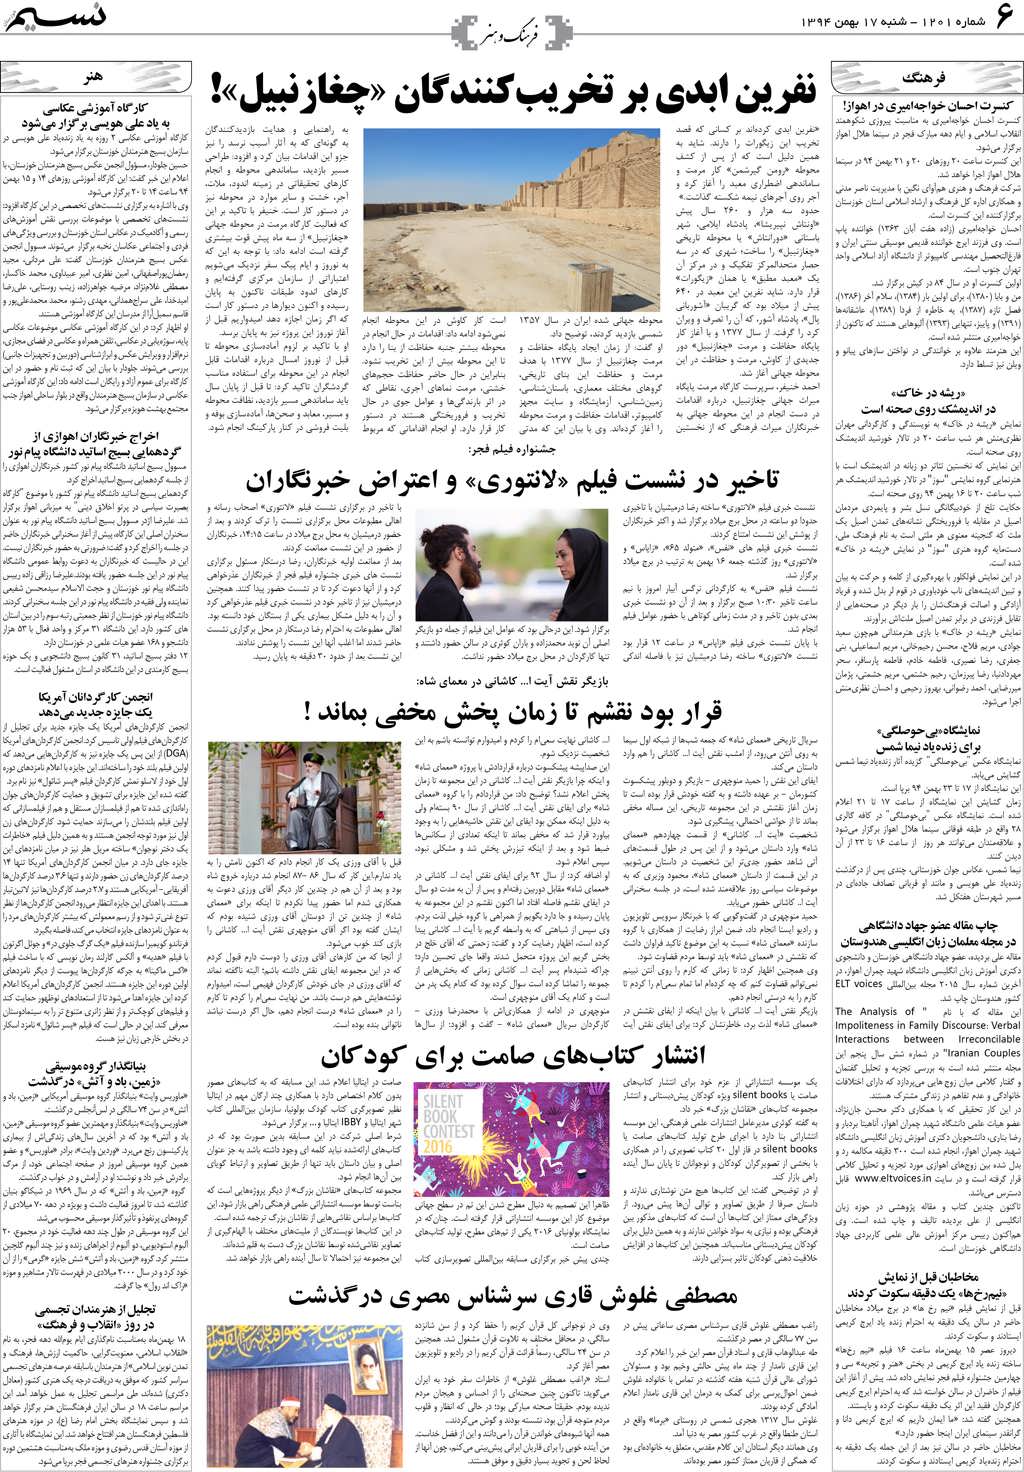 صفحه فرهنگ و هنر روزنامه نسیم شماره 1201